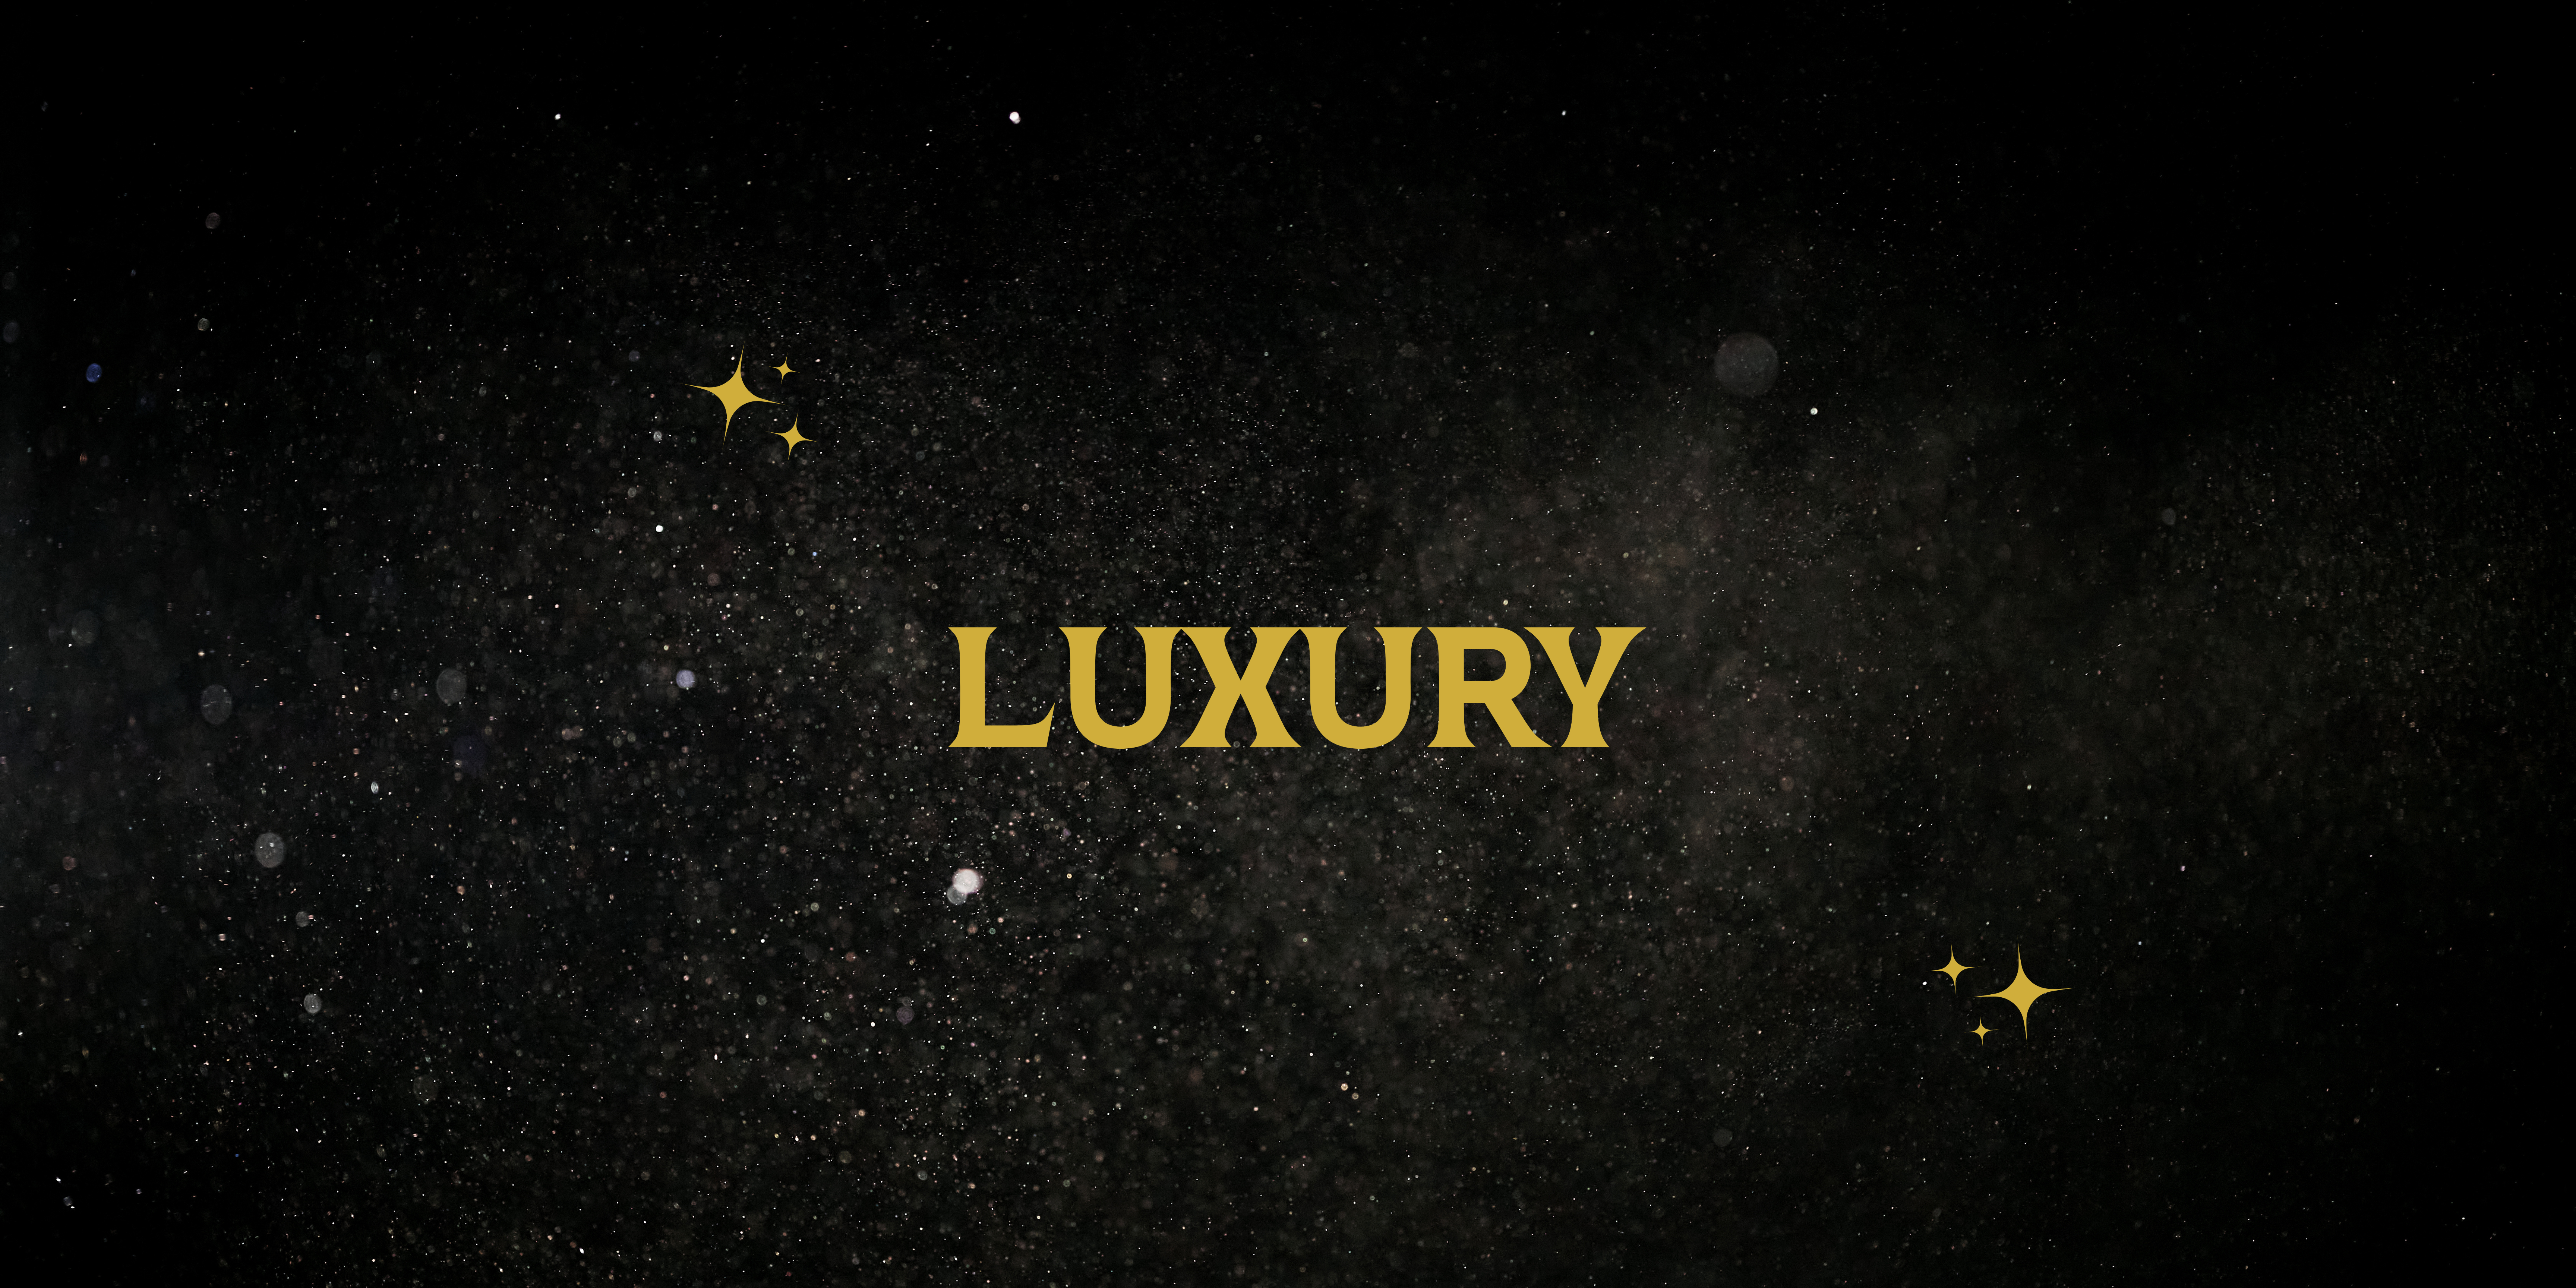 Luxury watch brands - PART III